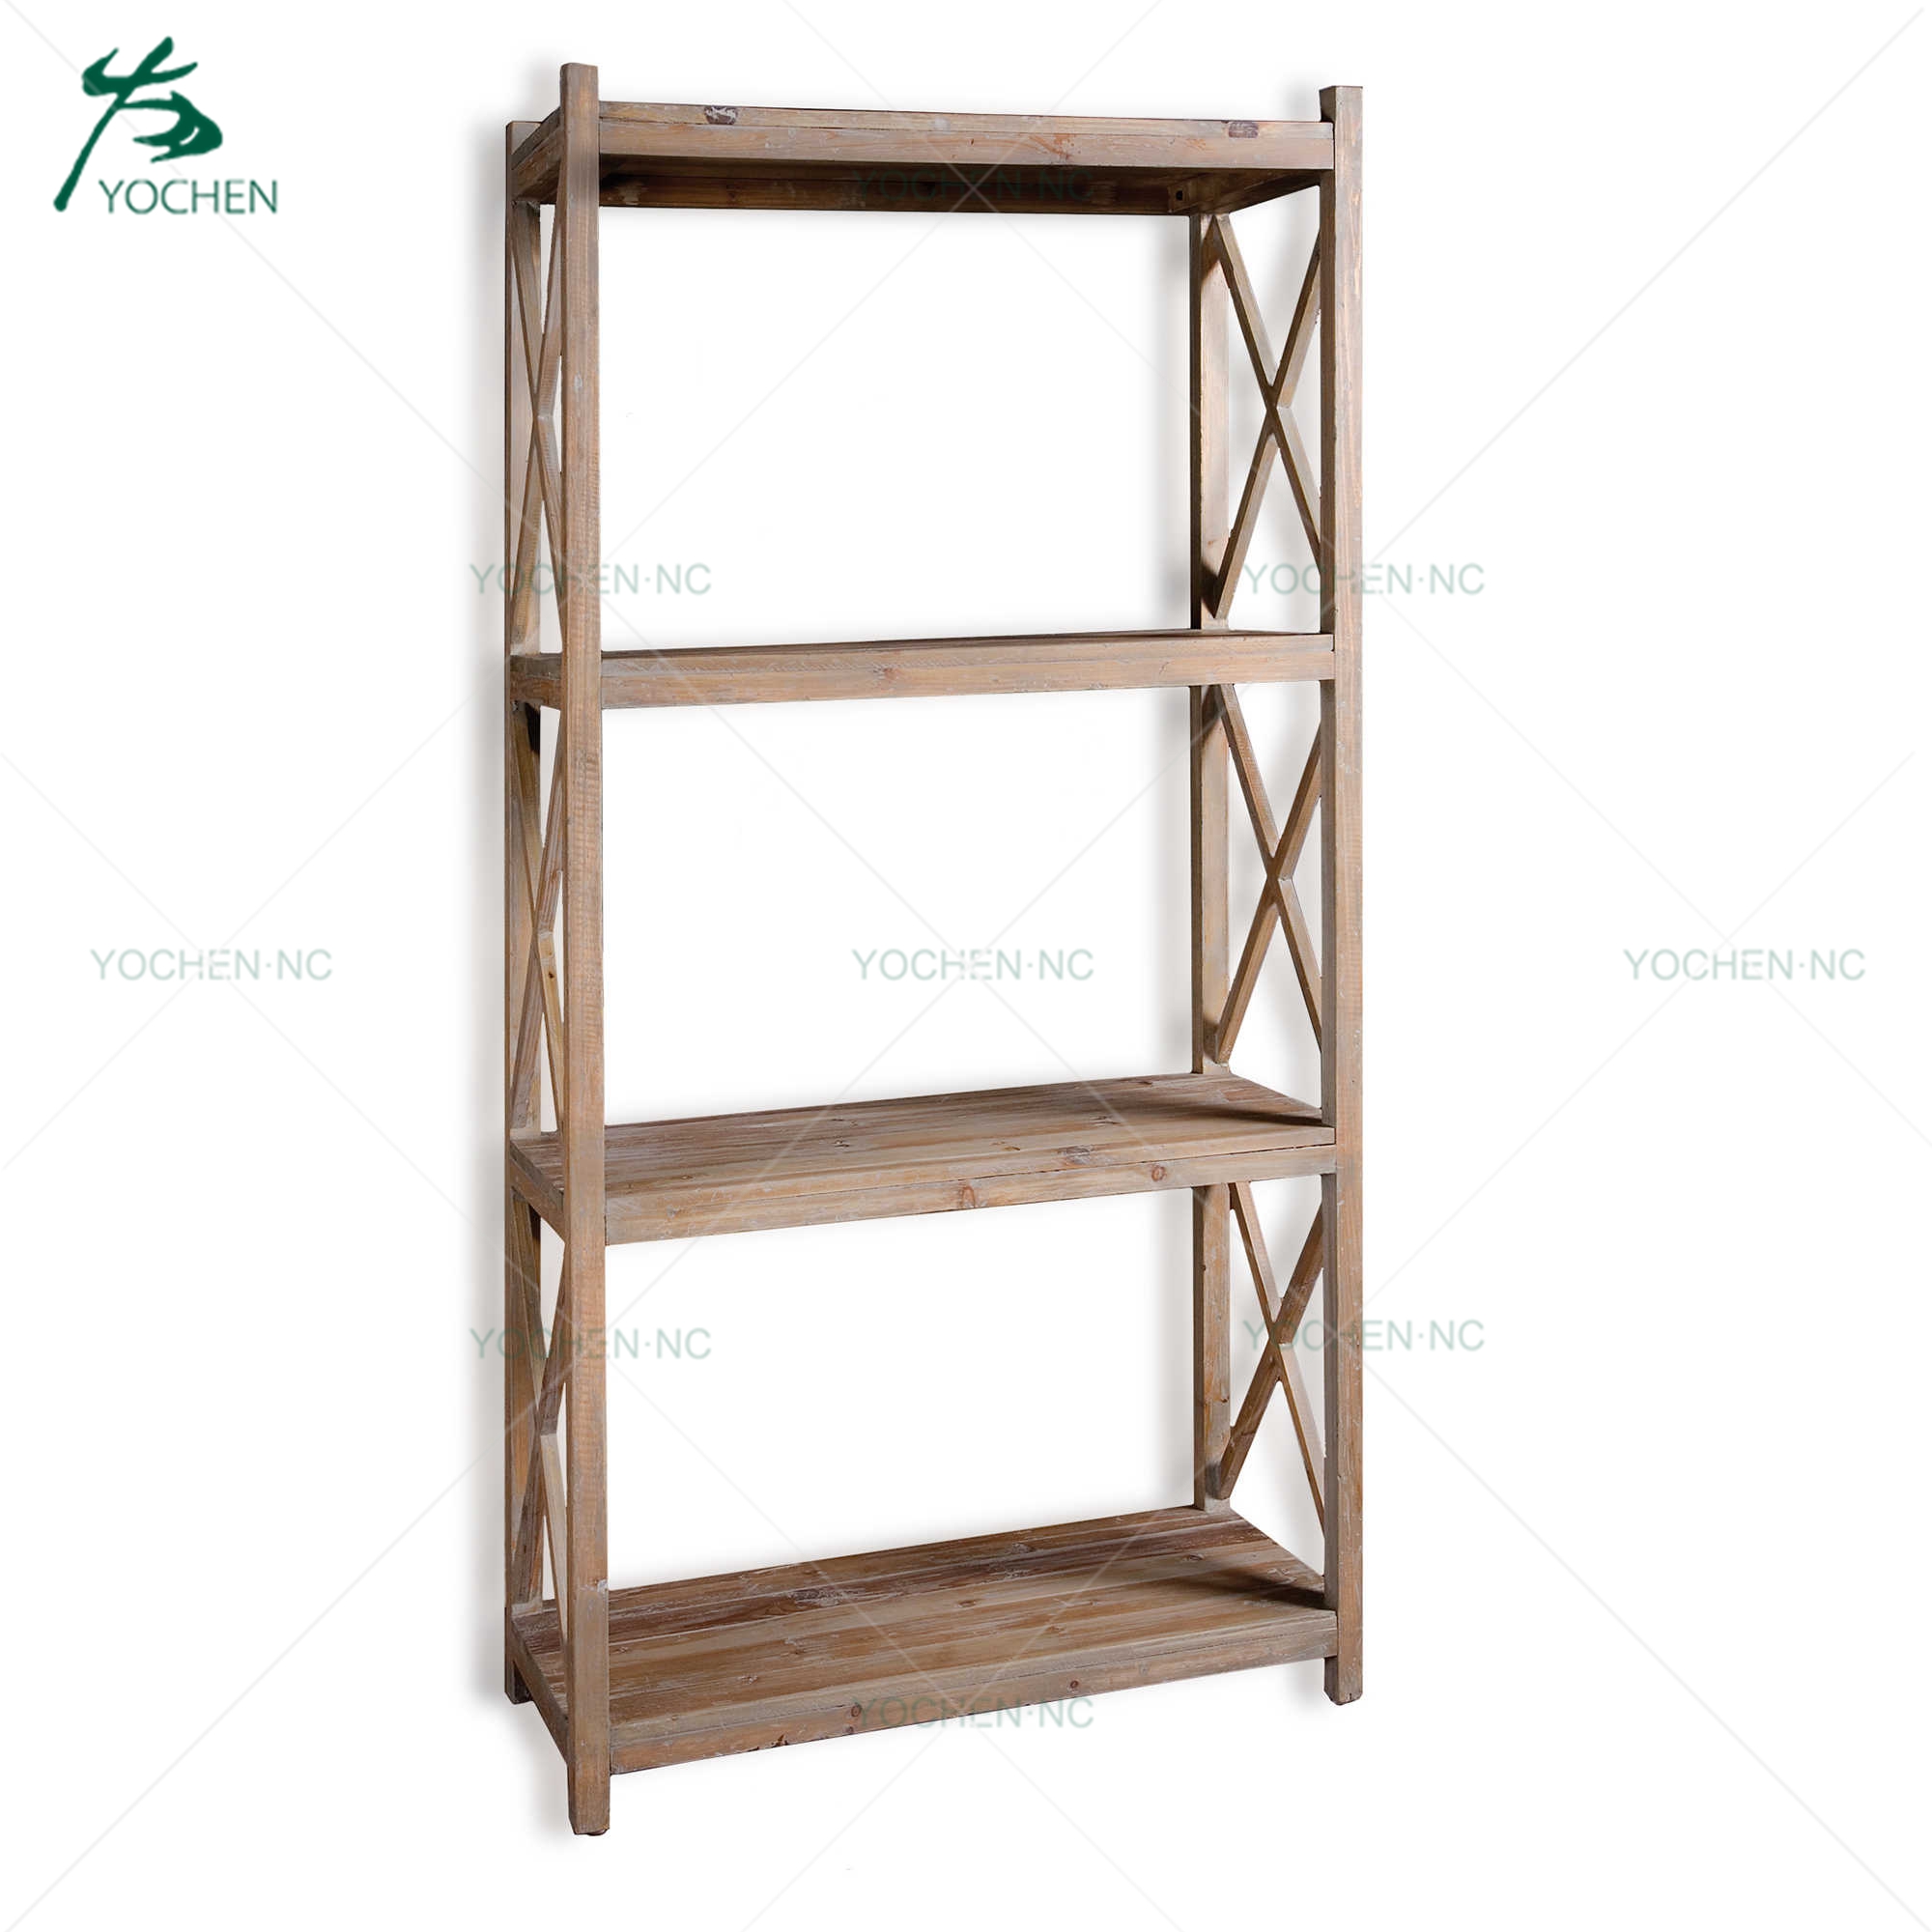 wooden ironing board / ironing cabinet shelves storage unit bookcase